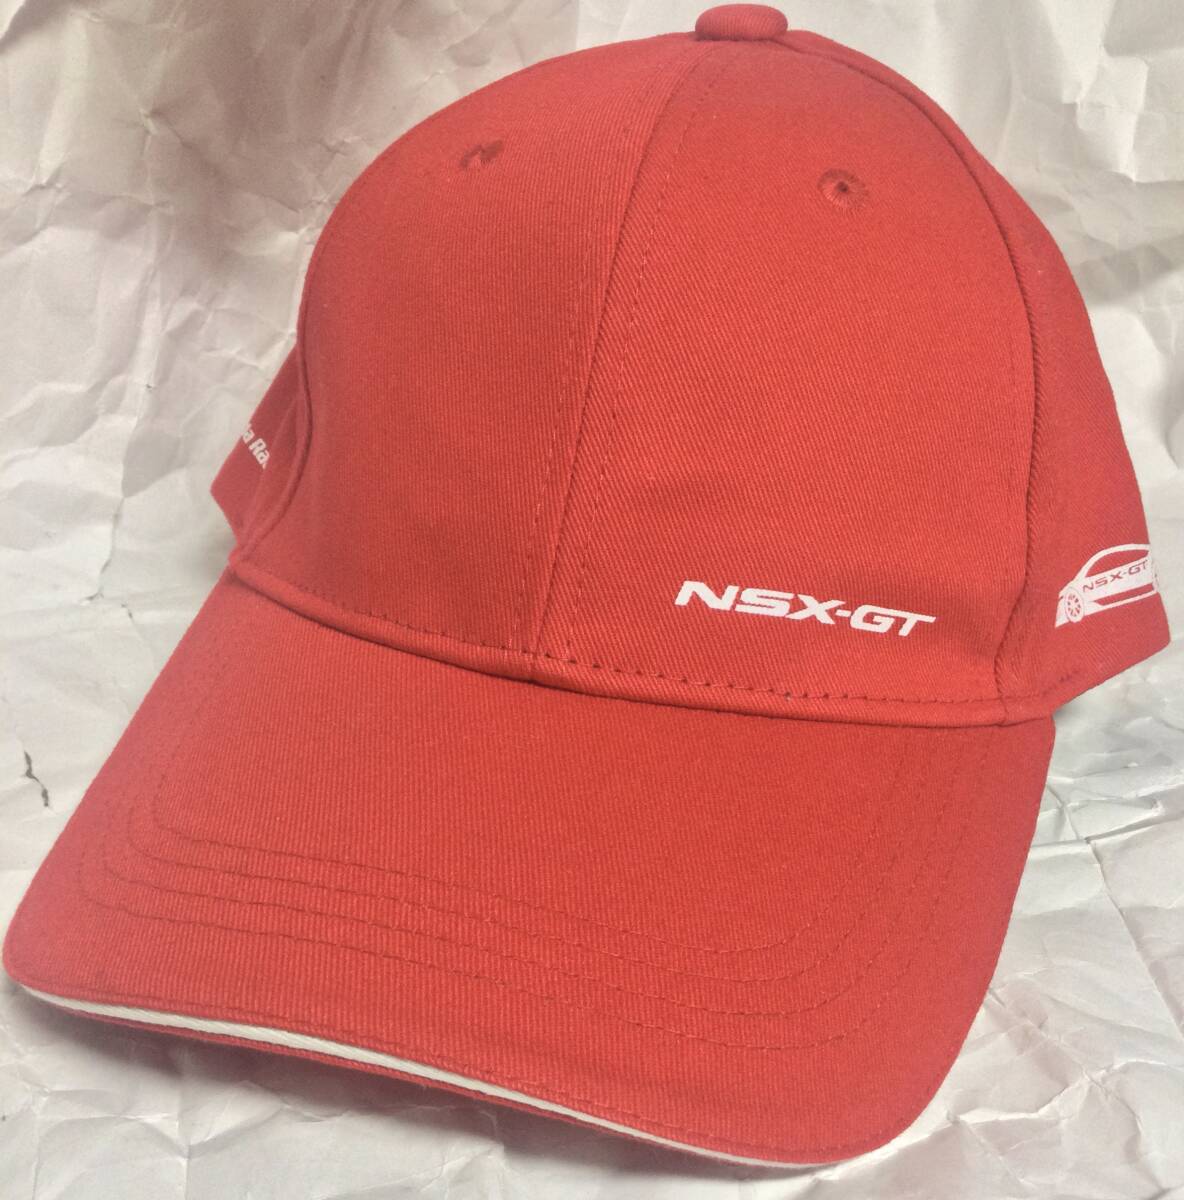 ホンダレーシング NSX-GT キャップ 帽子 Honda Racing エヌエスエックスの画像1